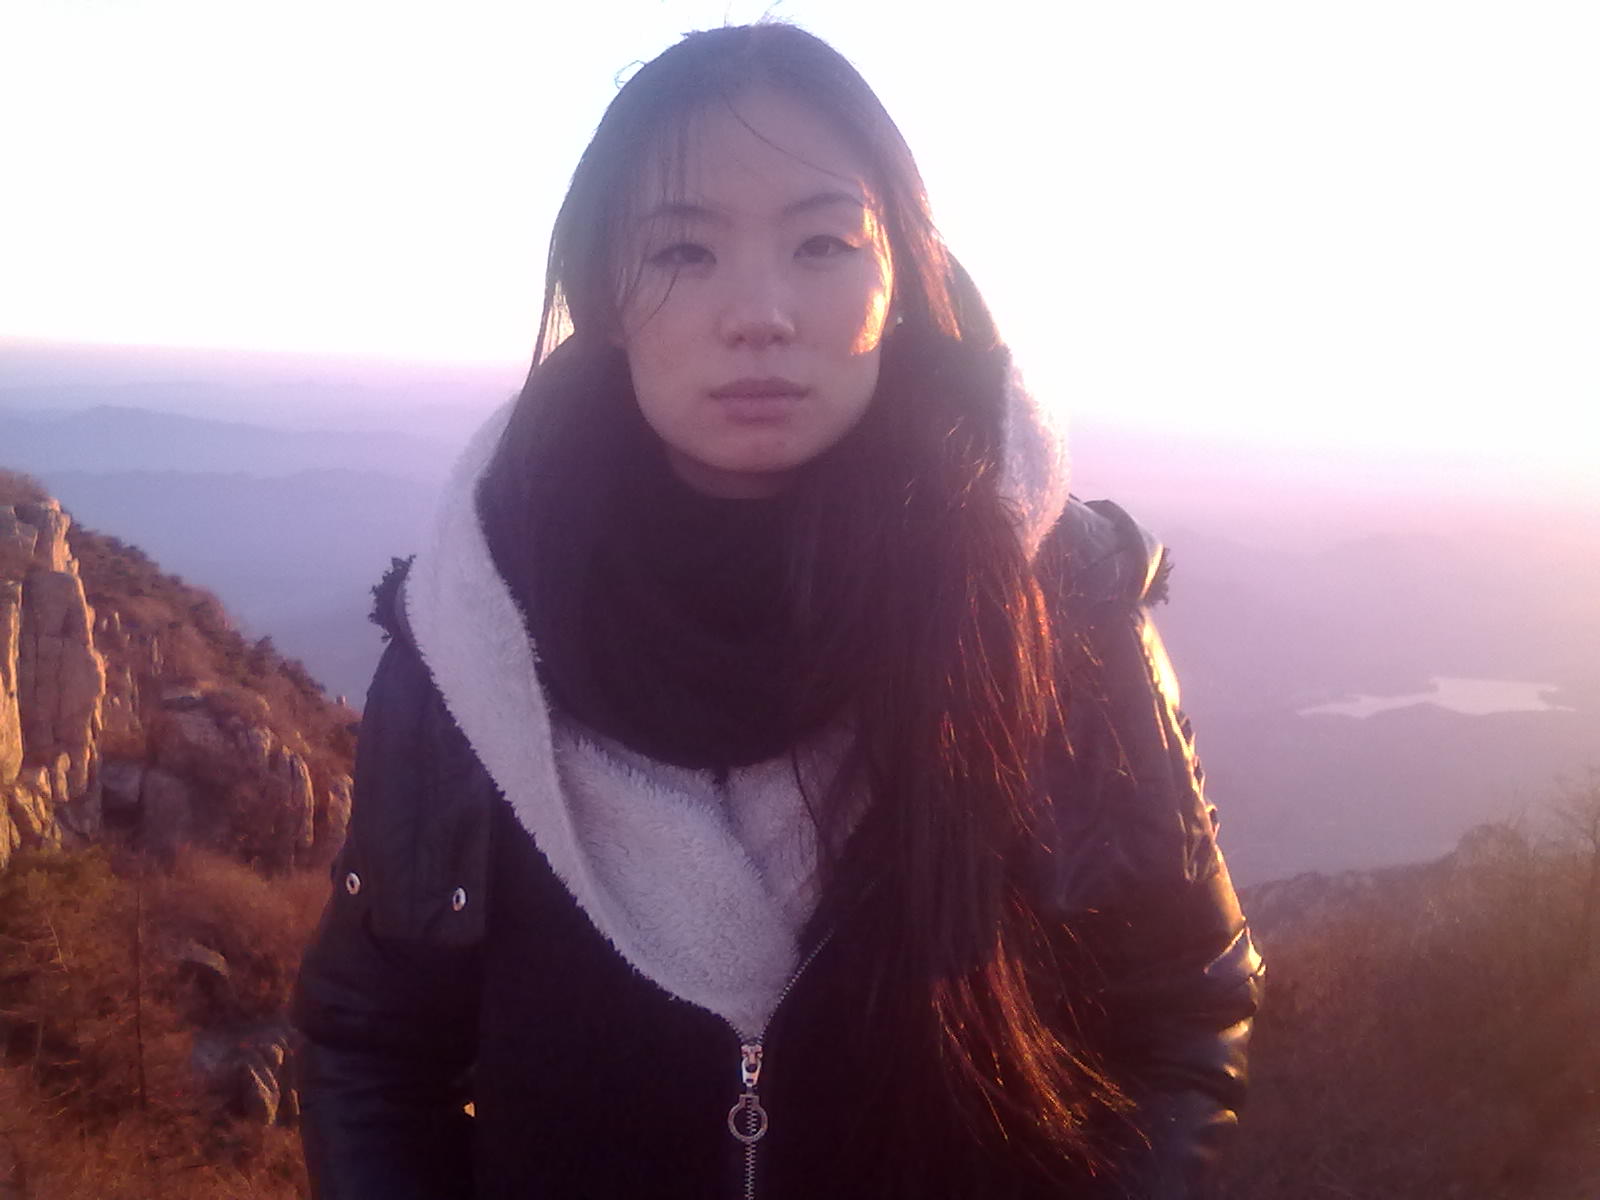 我爱自拍。夜爬泰山,只为一眼夕阳。